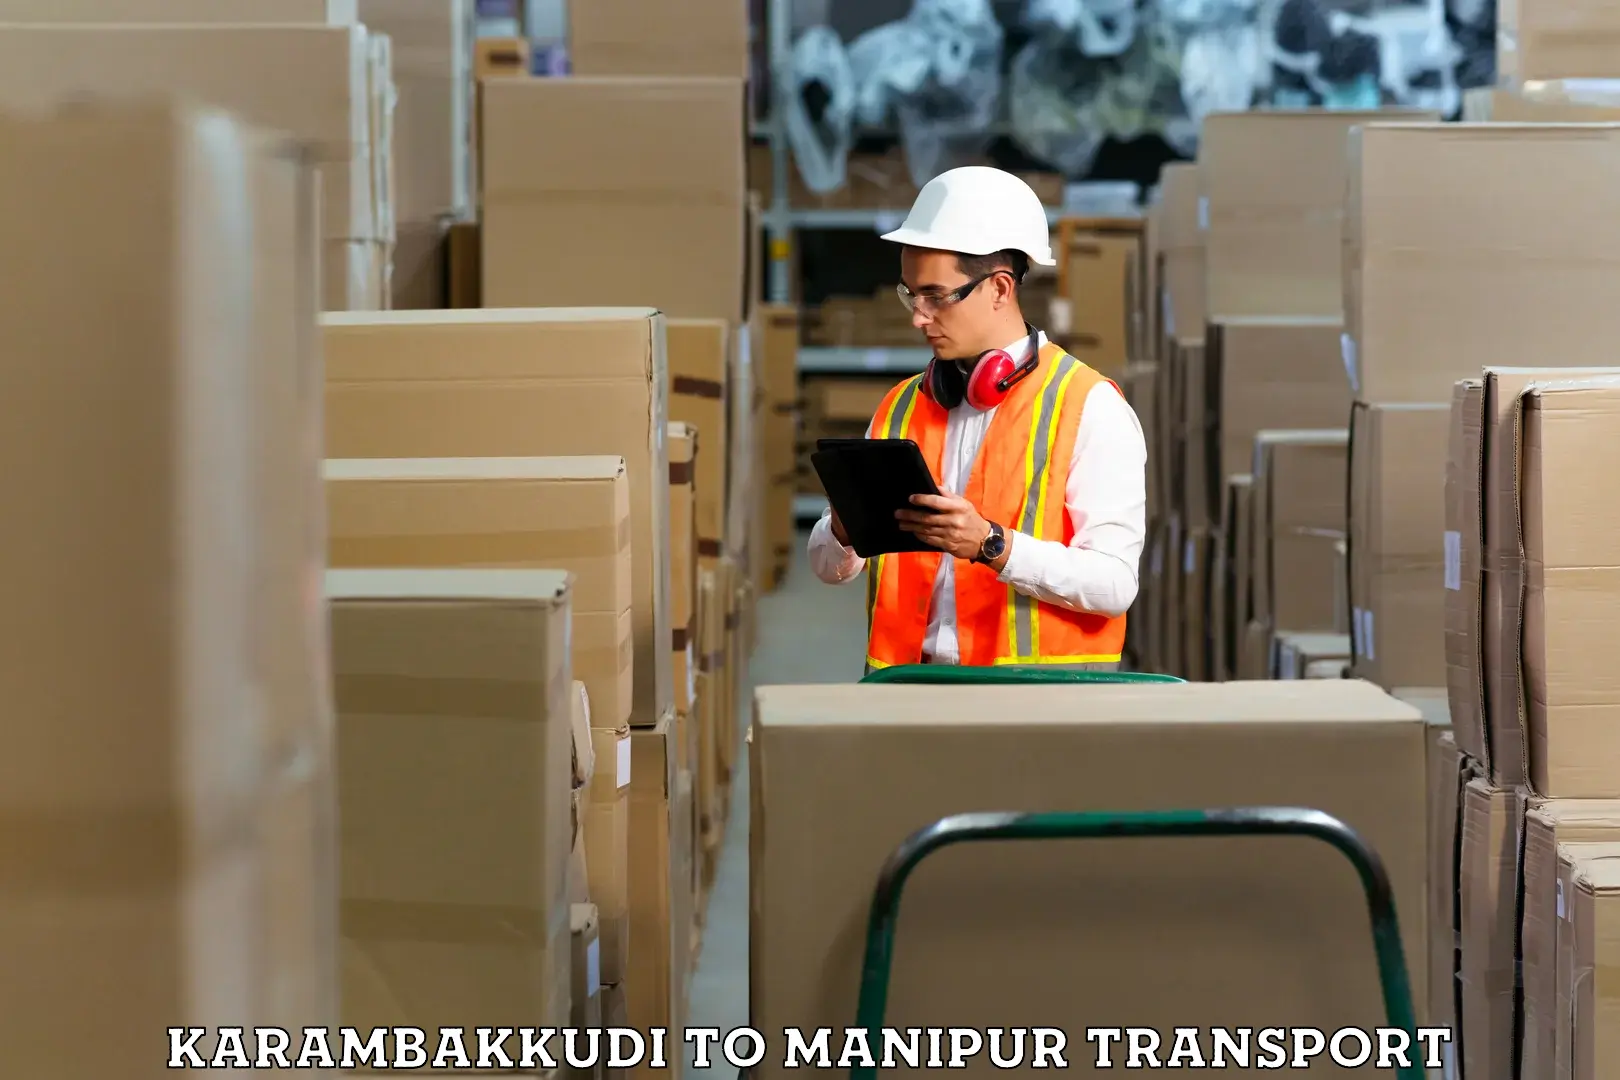 Transportation services Karambakkudi to Manipur